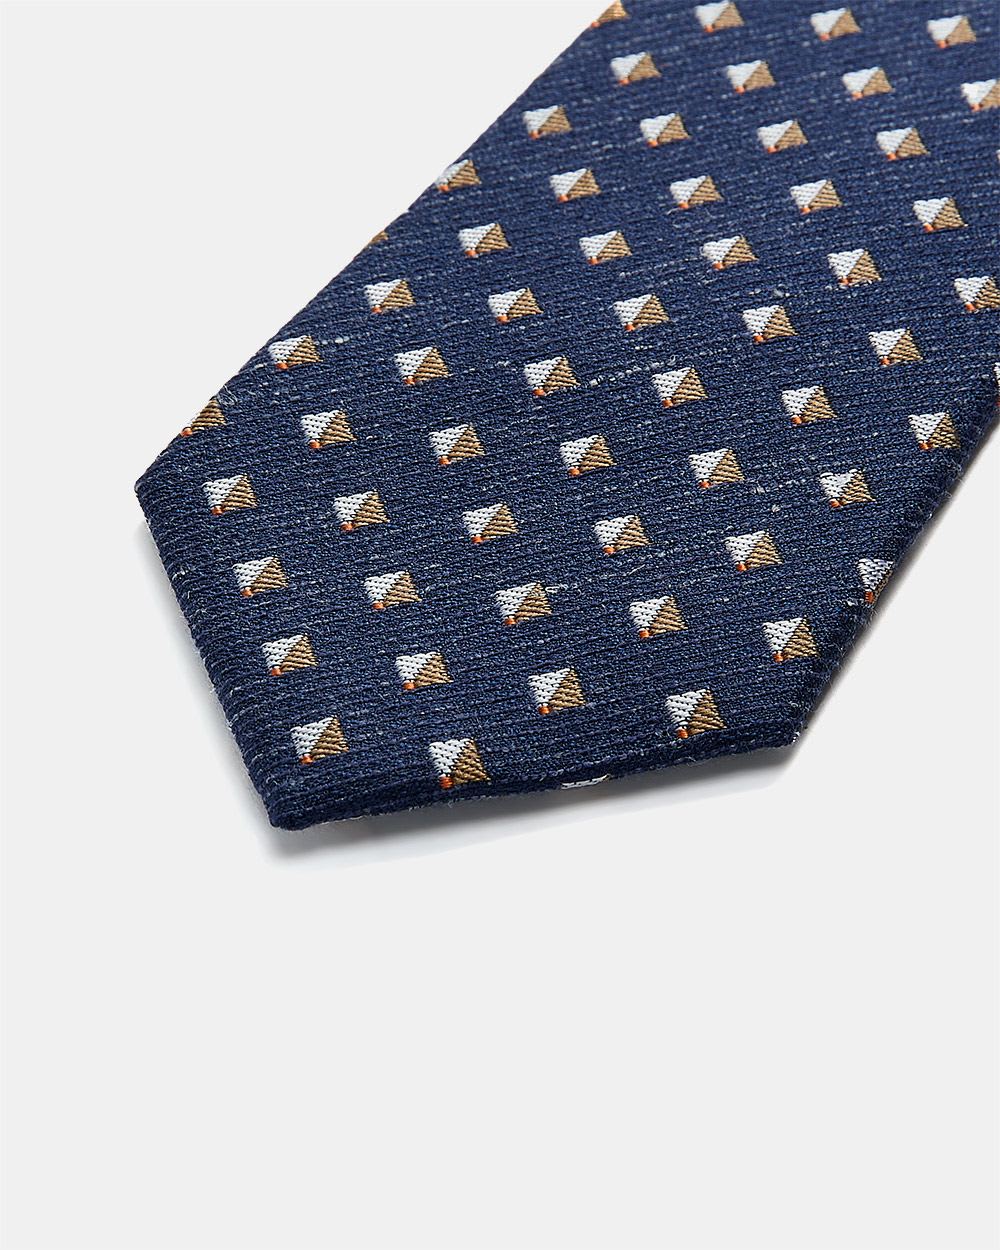 Cravate Régulière à Carreaux Bleu et Camel